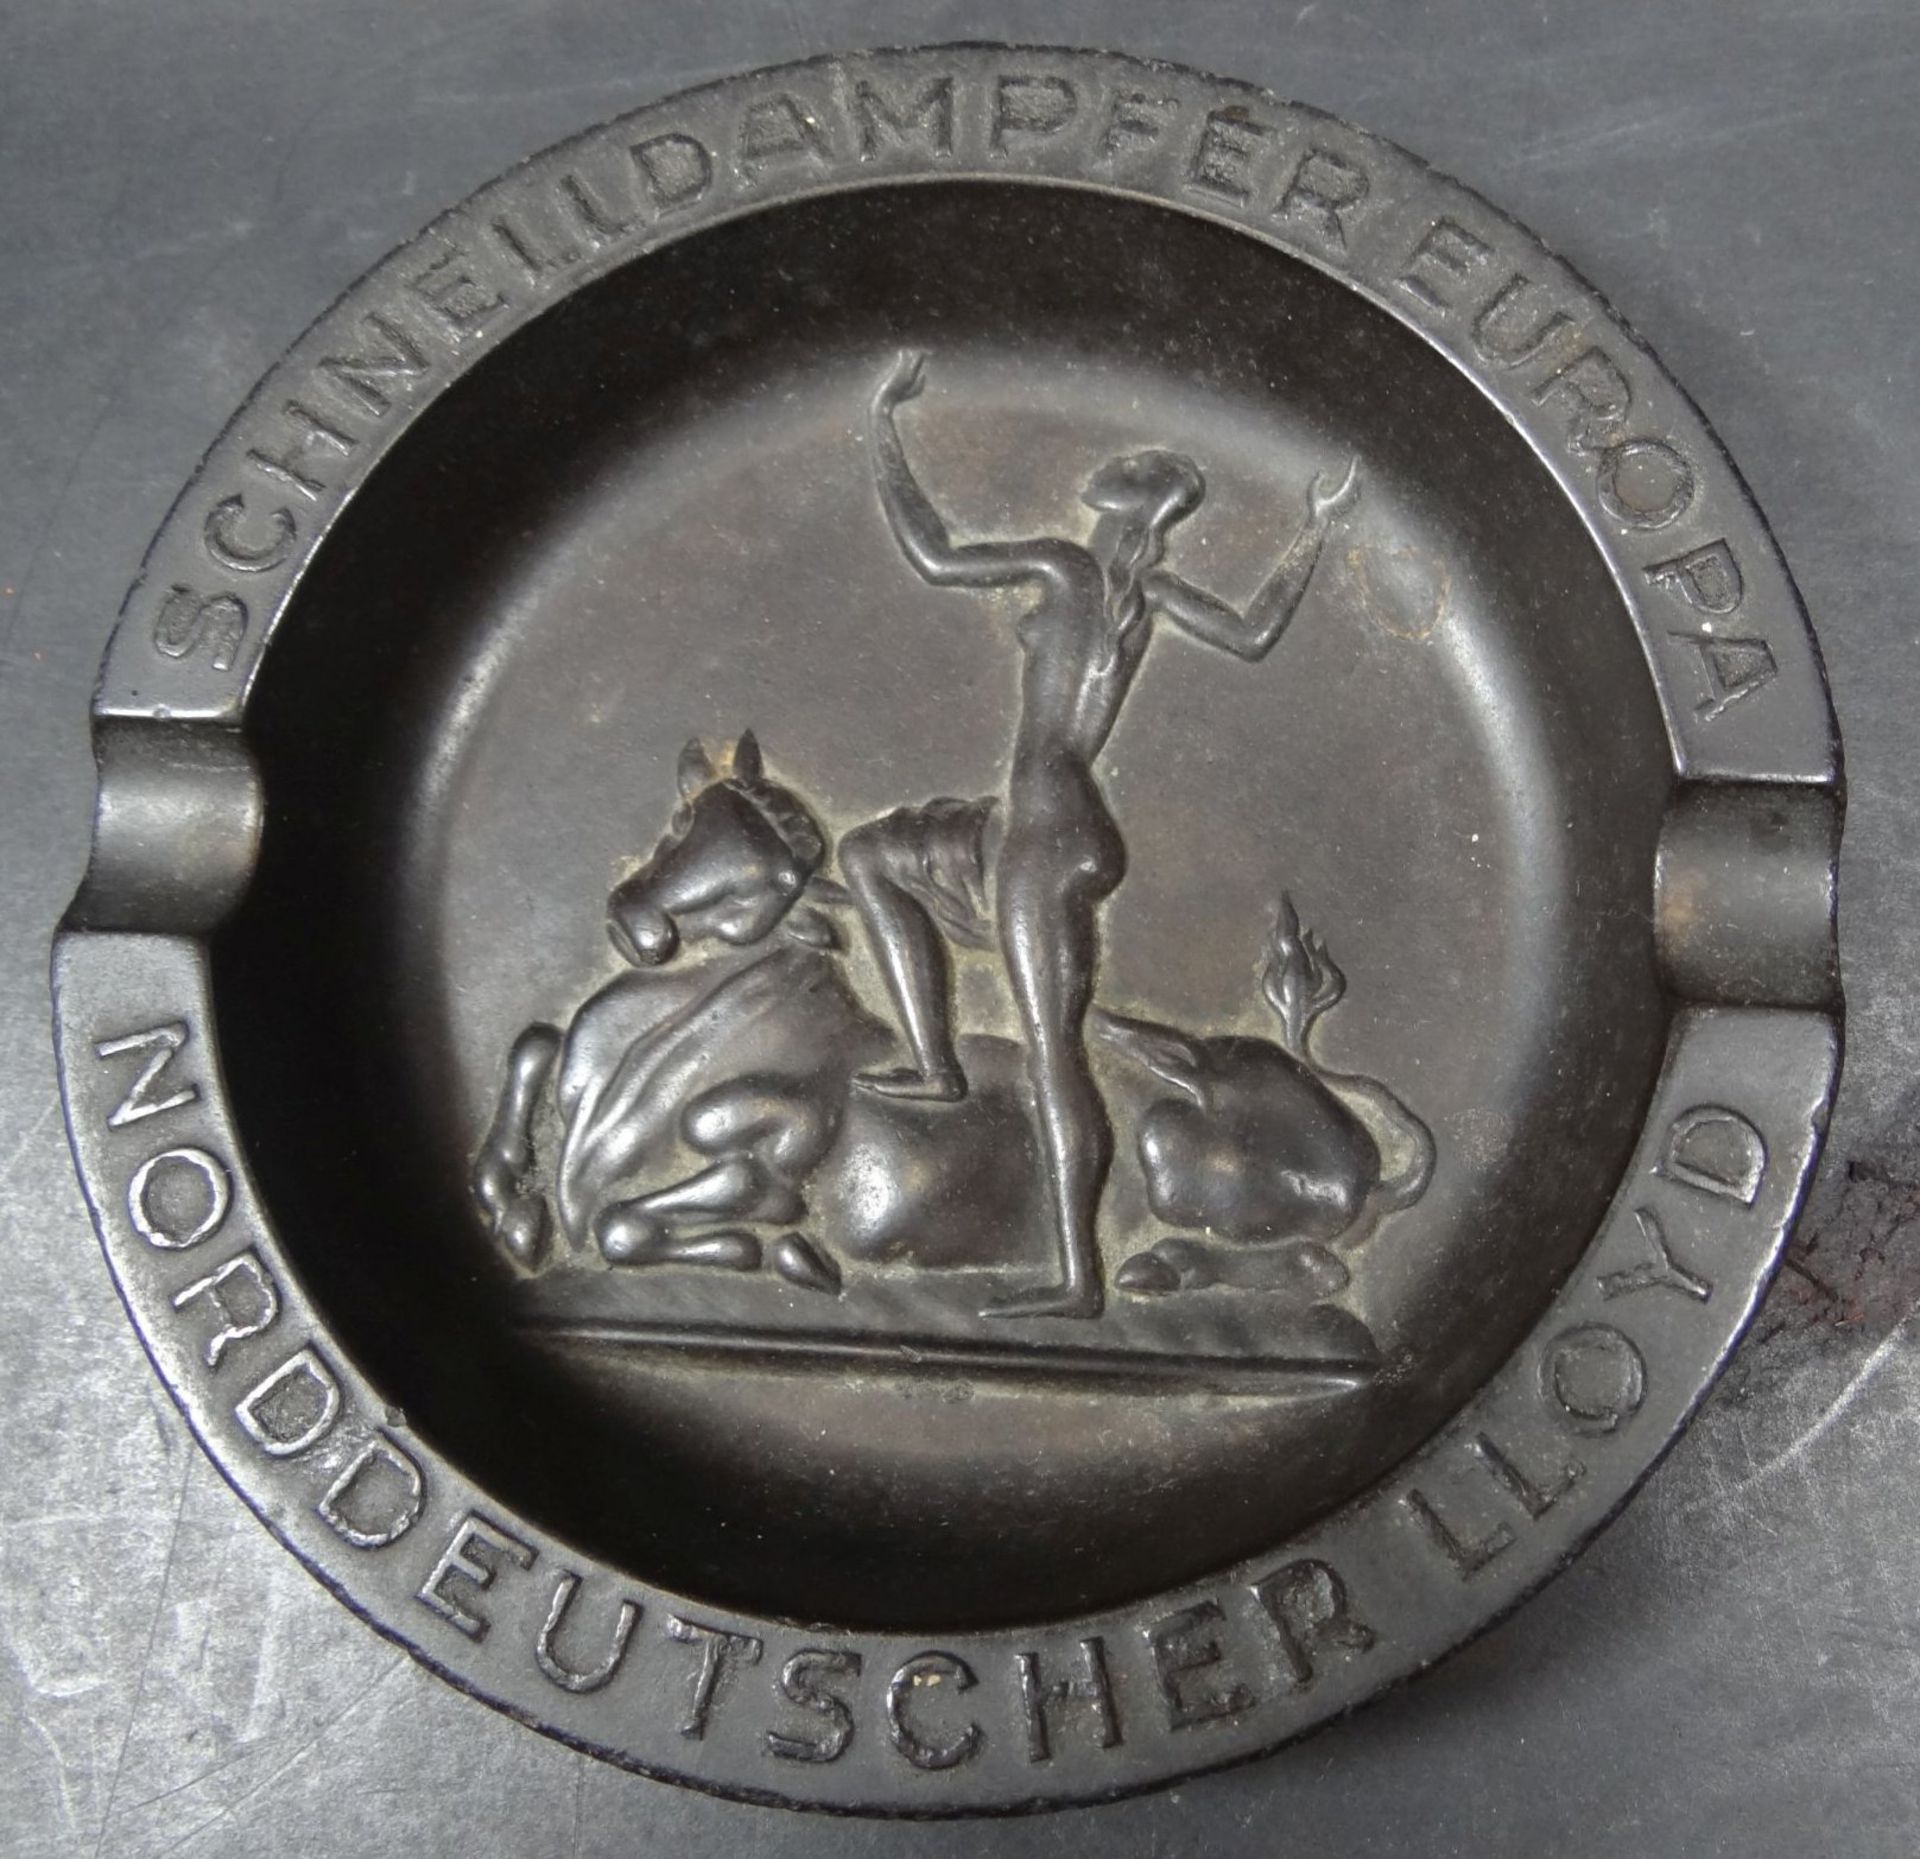 Bakelit-Ascher um 1920 des NDL Bremen, D-14 cm- - -22.61 % buyer's premium on the hammer priceVAT